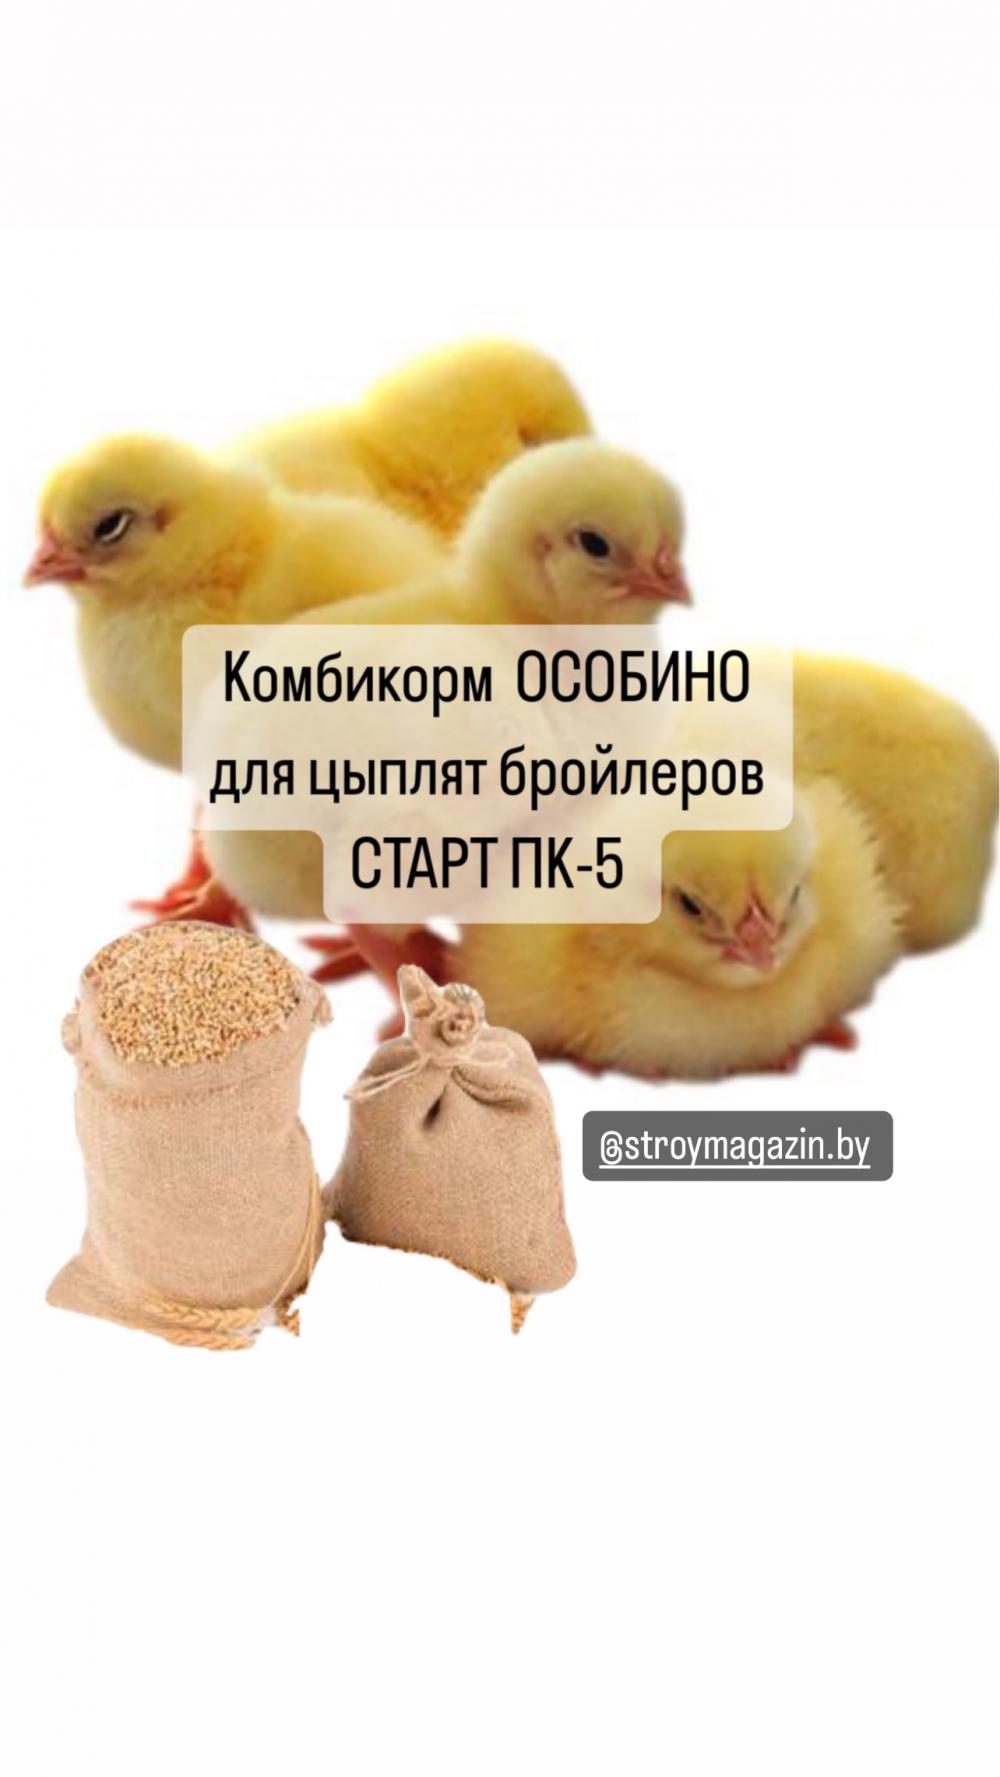 Комбикорм СТАРТ ПК-5 для цыплят бройлеров "Особино (Узовский)"